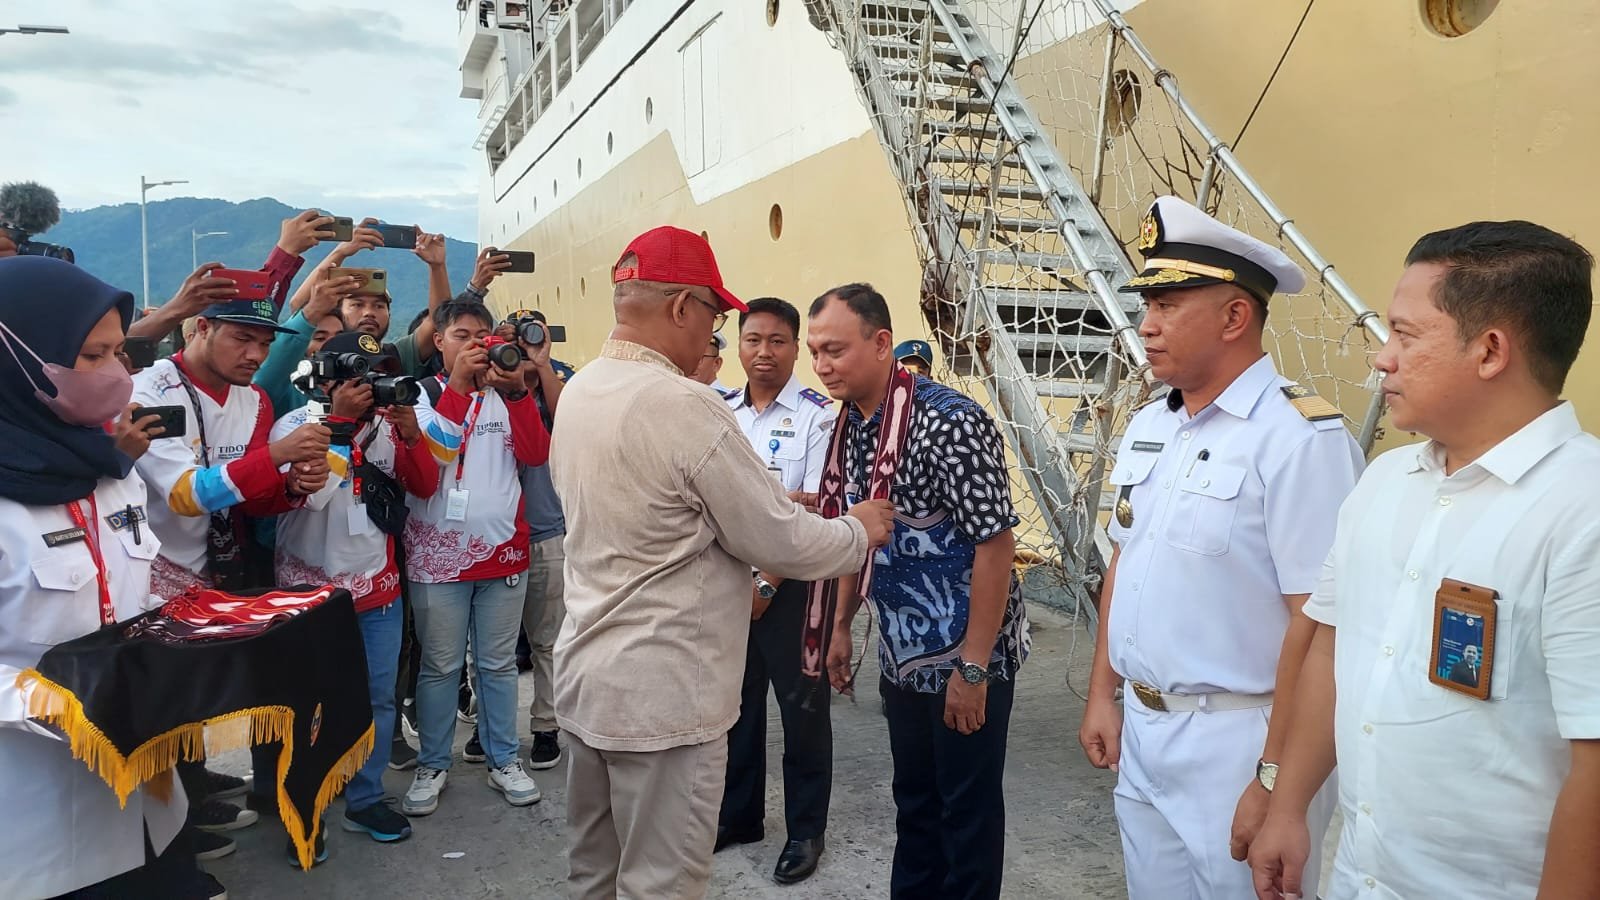 Dukung Sail Tidore 2022, Ditjen Hubla Siapkan KM. Tatamailau Sebagai Hotel Terapung